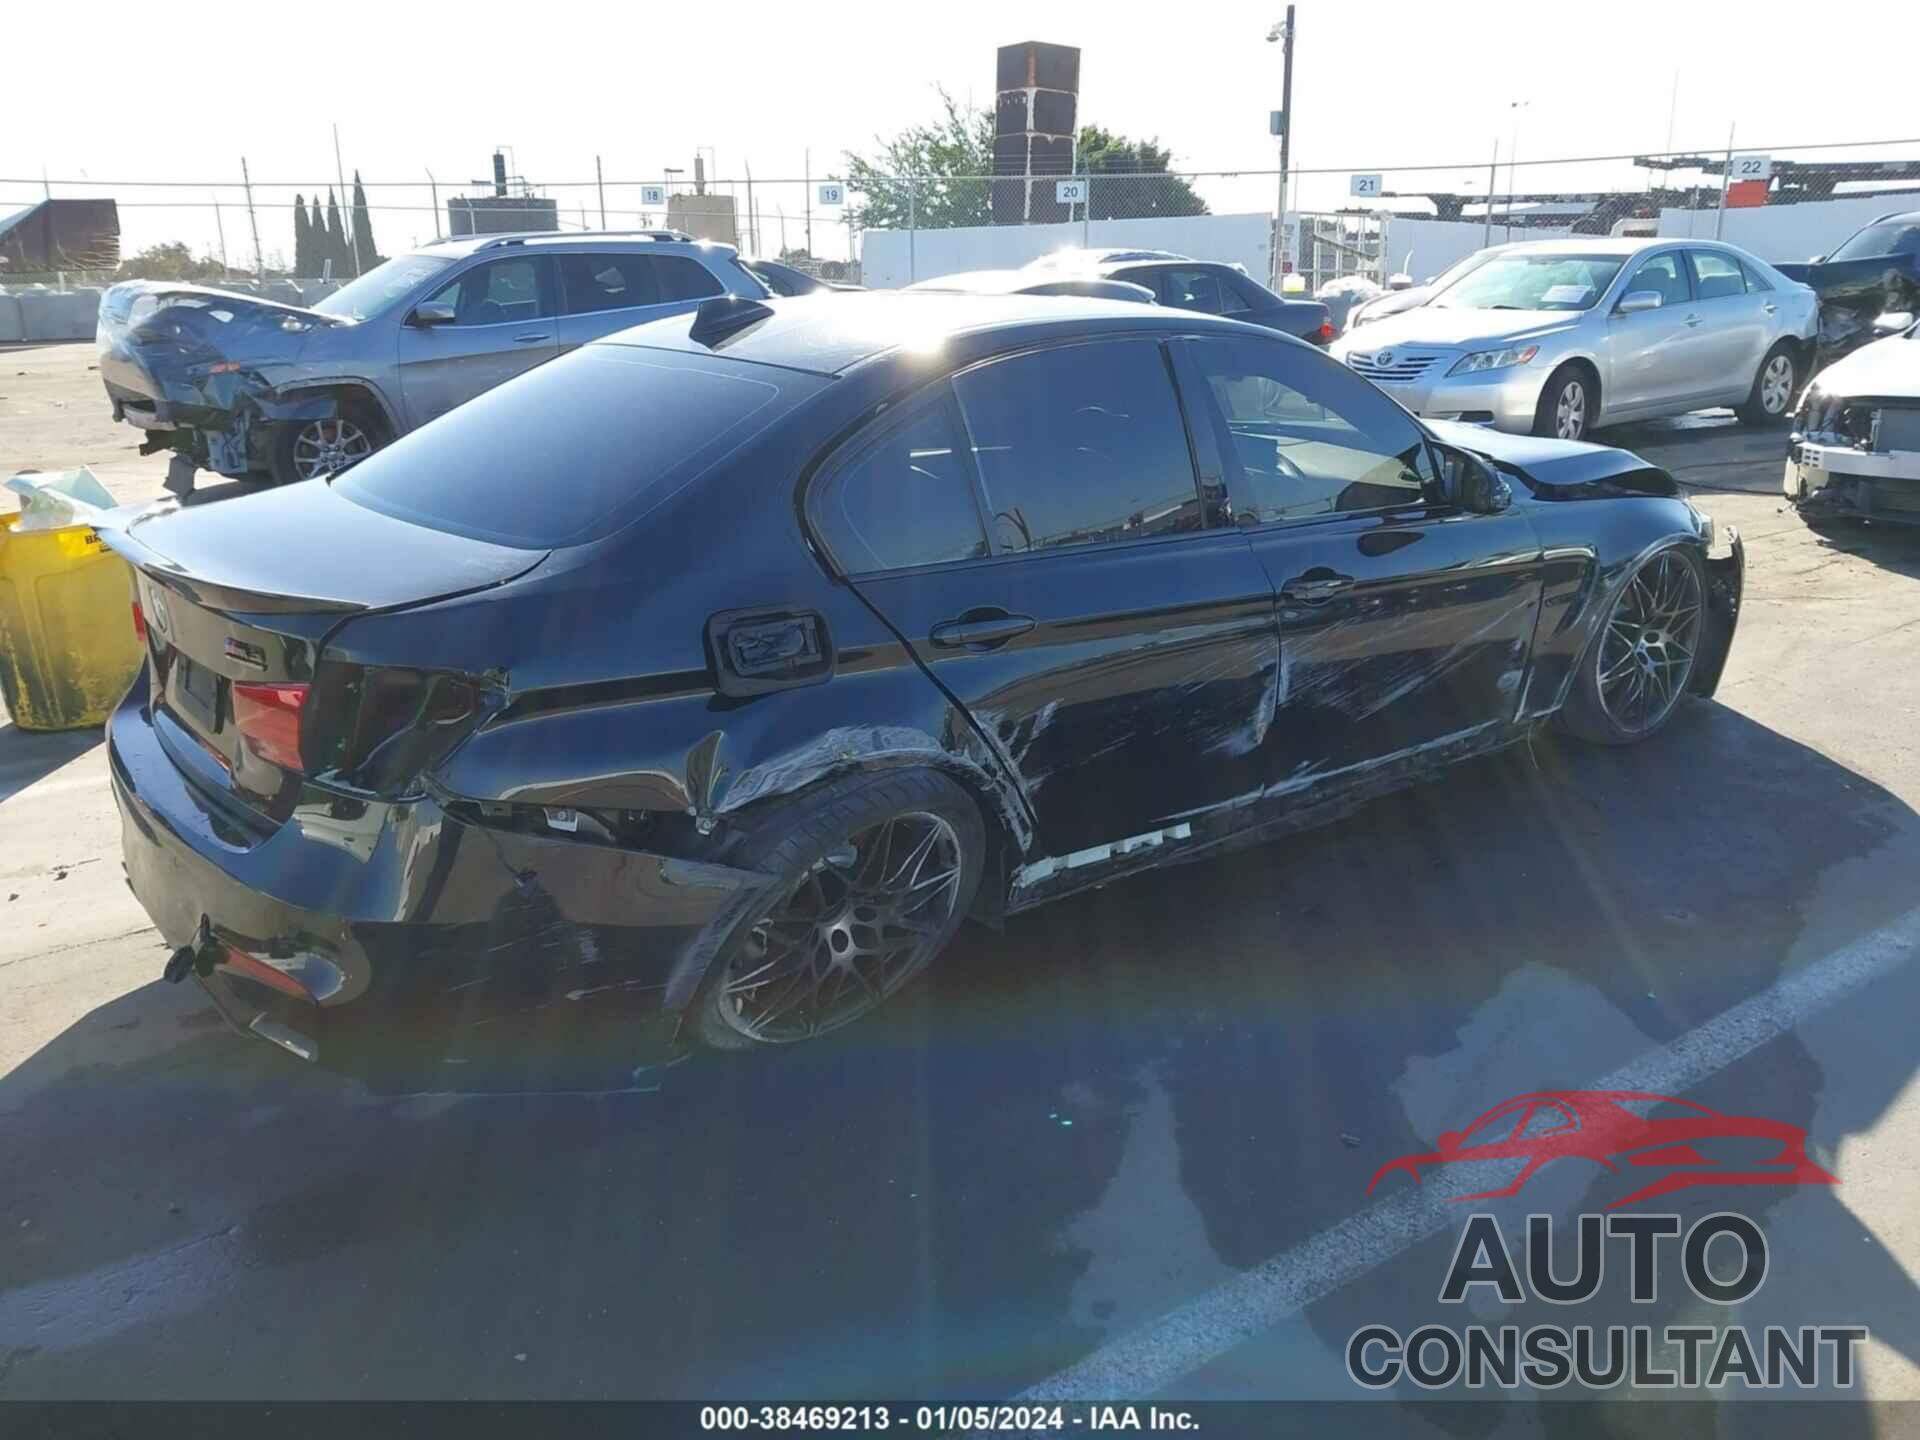 BMW M3 2018 - WBS8M9C50J5J77938